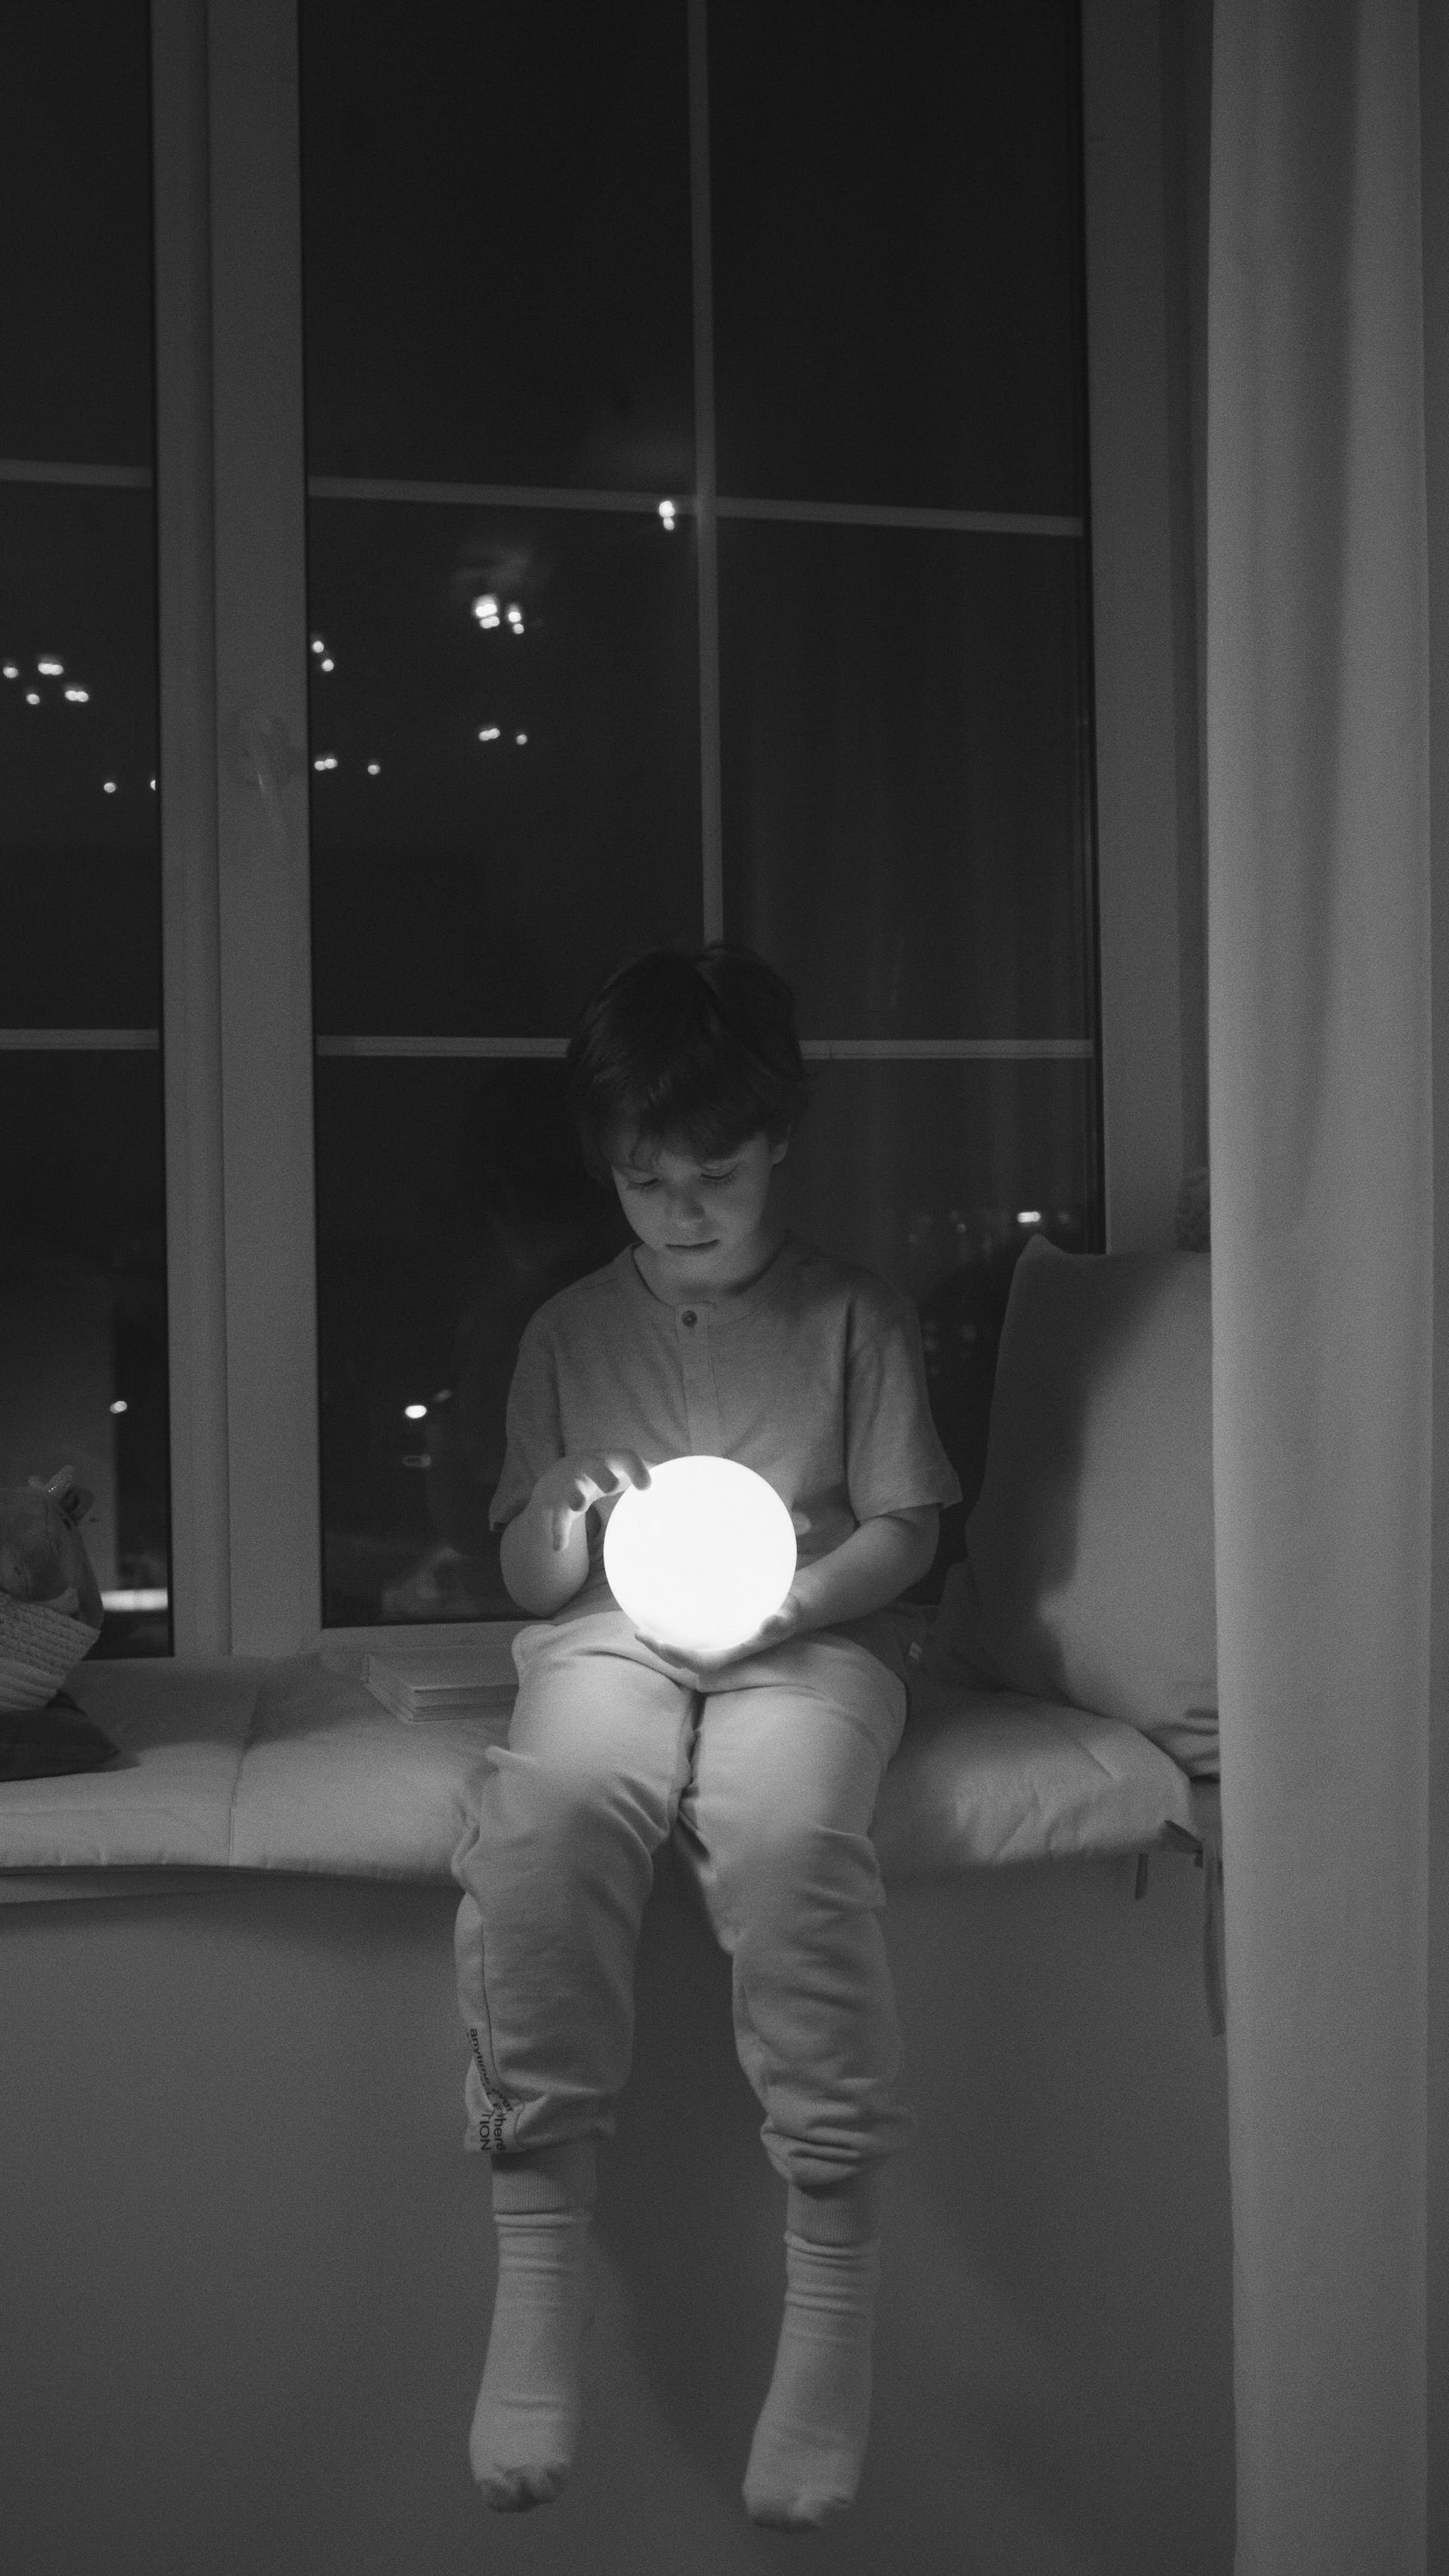 Ein Junge hält eine Leuchtkugel | Quelle: Pexels